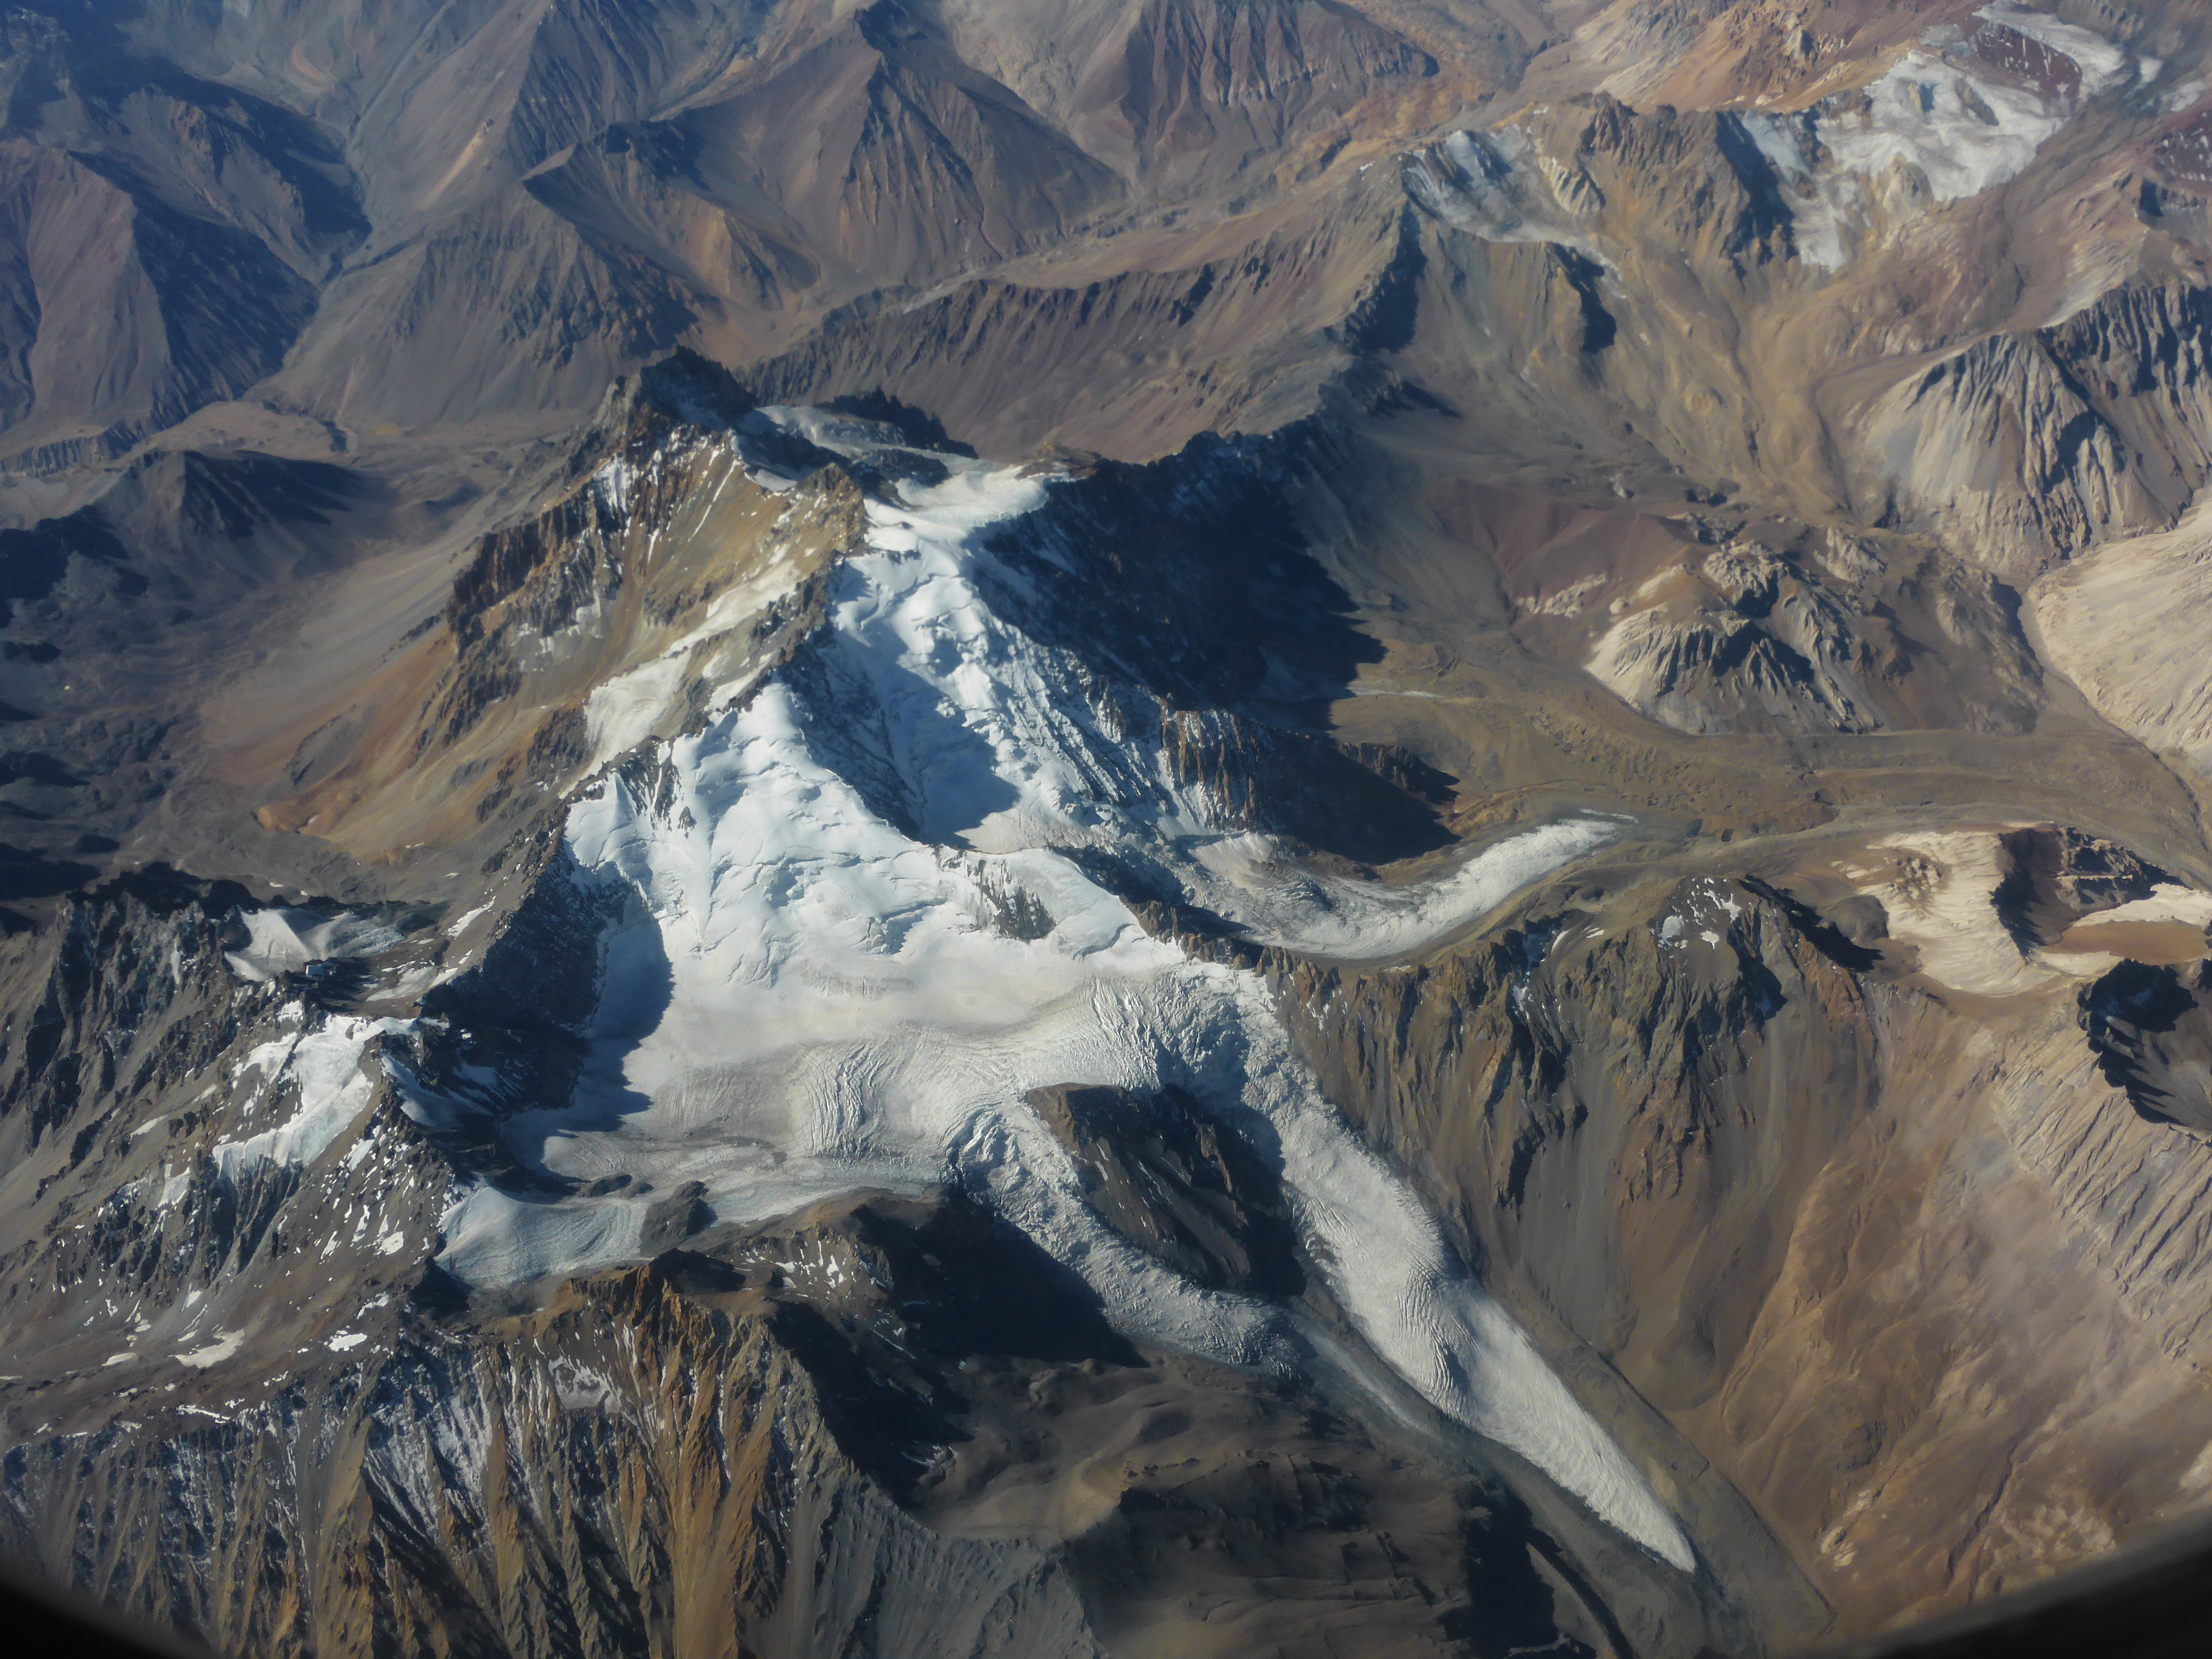 Gletscher in den Zentralanden südlich von Santiago de Chile haben zwar deutlich weniger Masse verloren als bisher angenommen, aber möglicherweise sind die Gletscher in absehbarer Zeit ganz verschwunden. Für die Menschen dort hat das gravierende Folgen, da sie auf das Schmelzwasser angewiesen sind. (Bild: FAU/Matthias Braun)